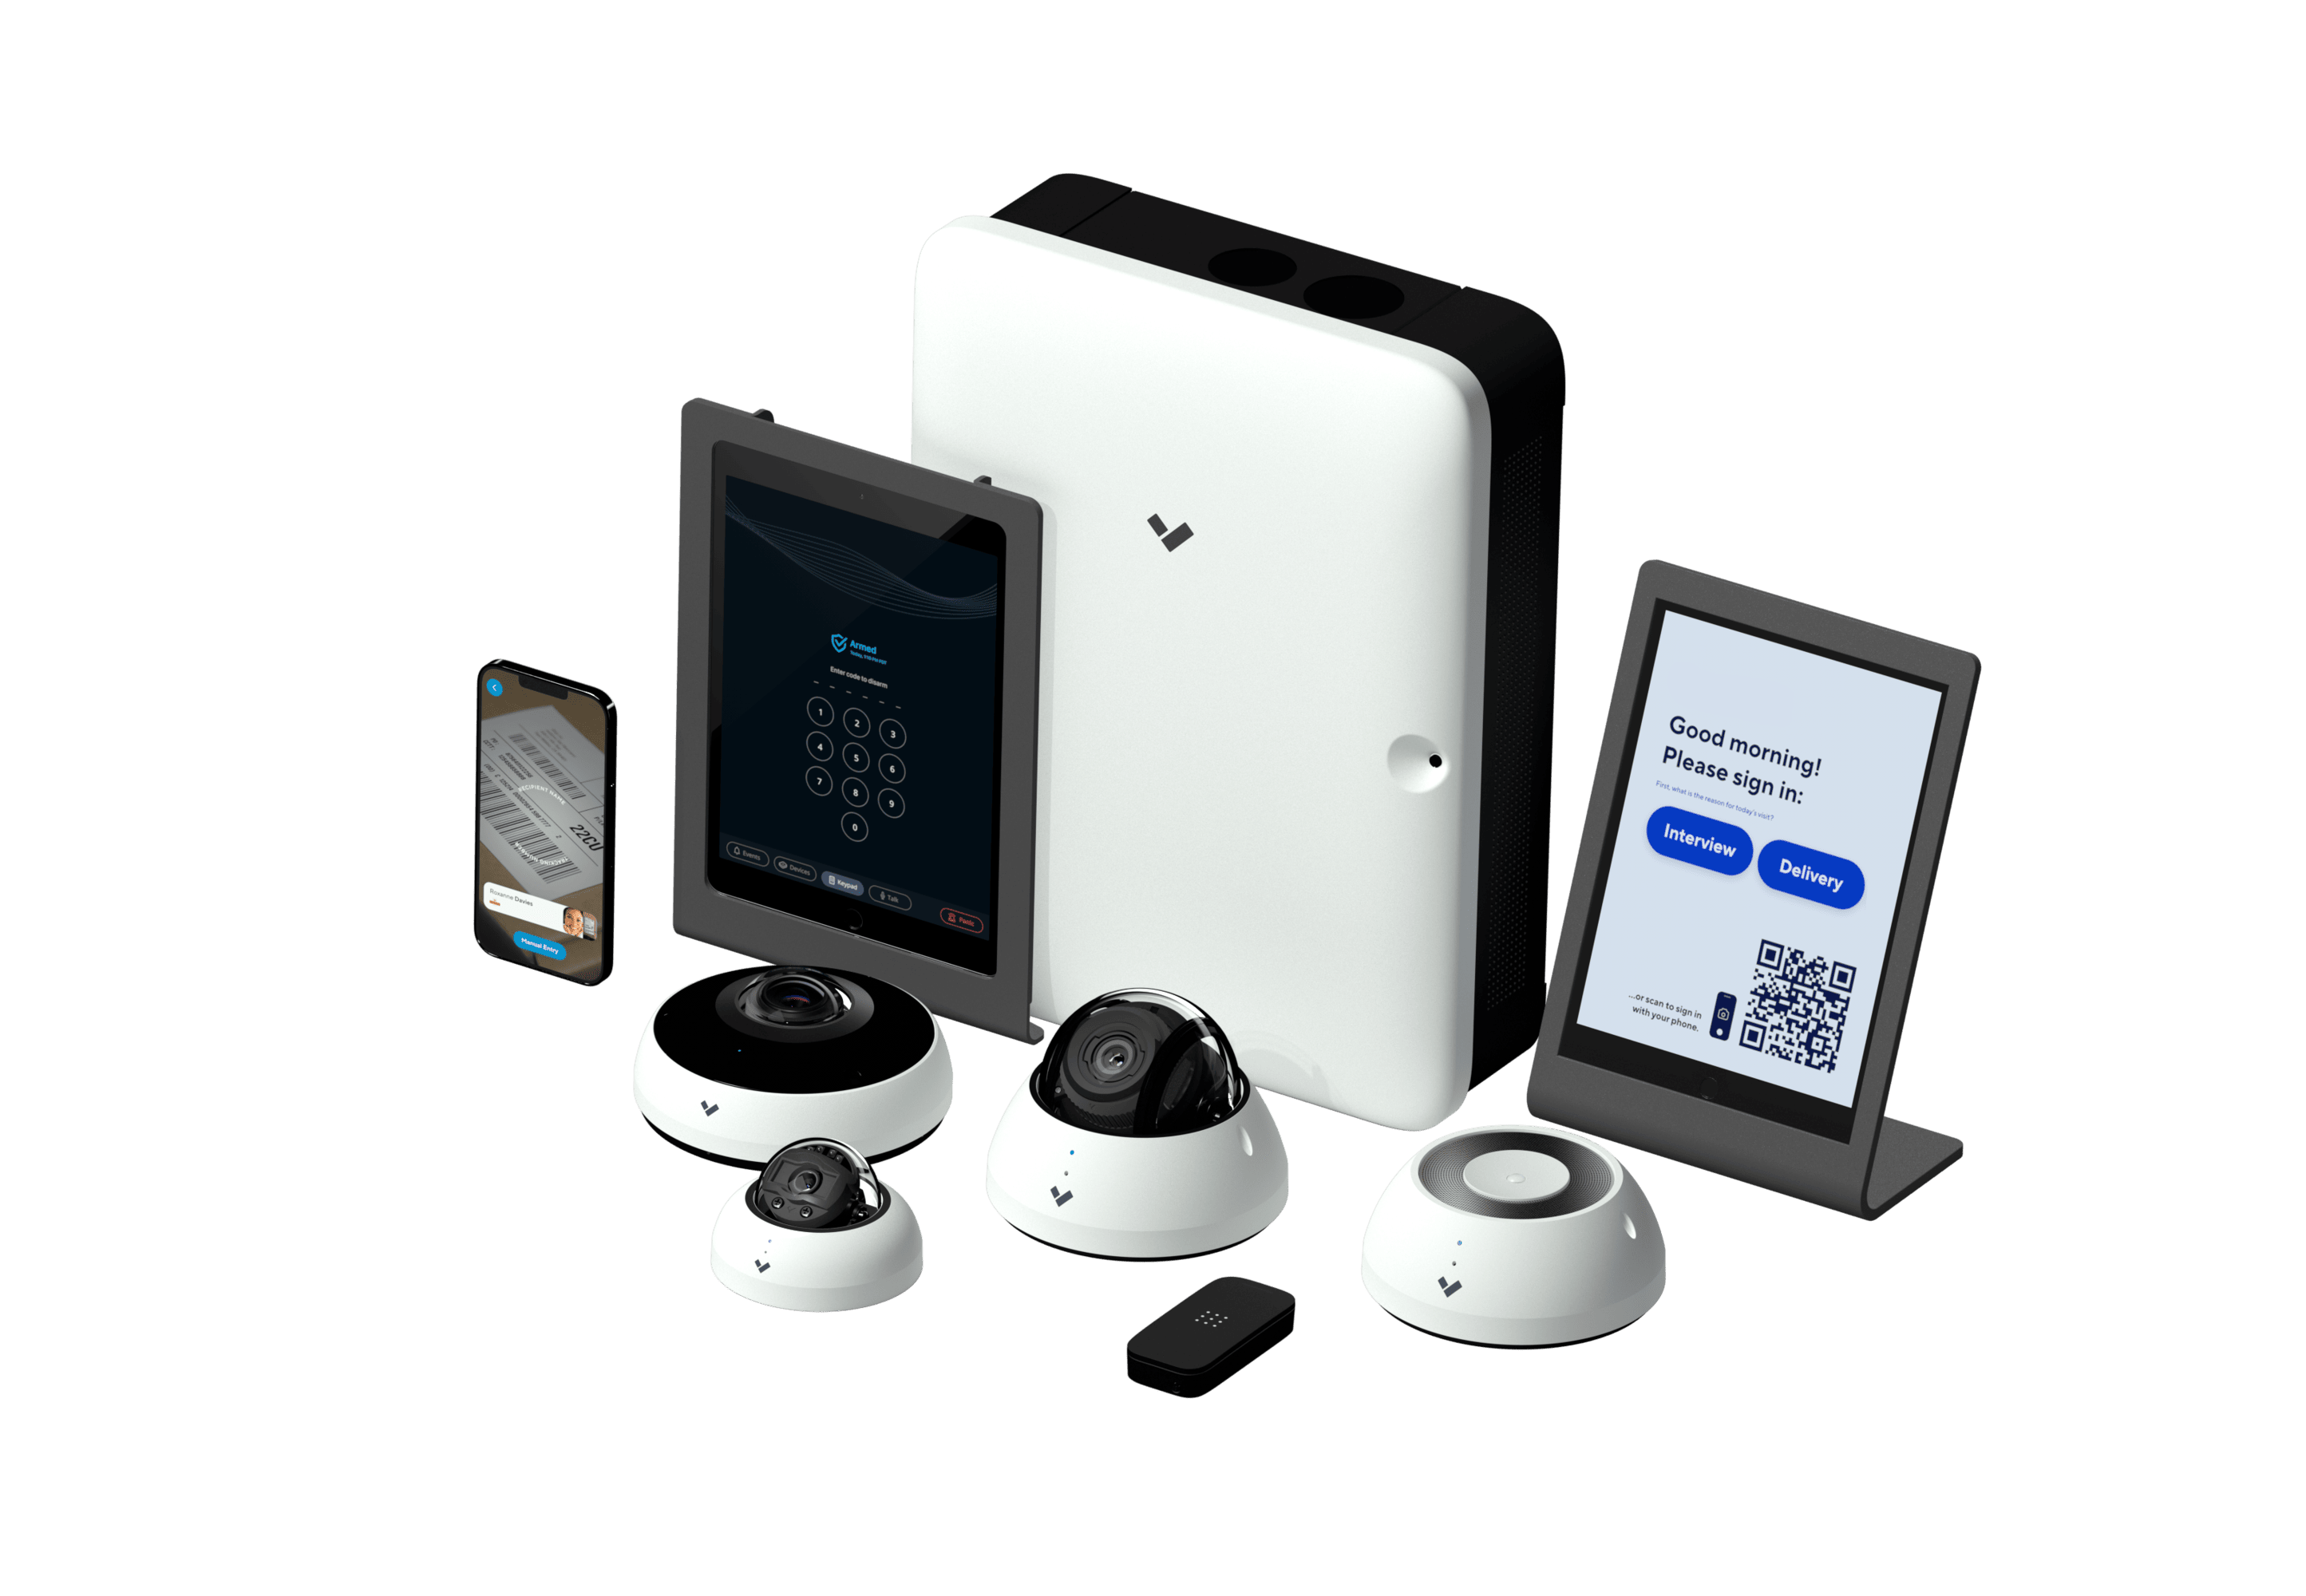 Verkada family for surveillance camera systems for Las Vegas businesses